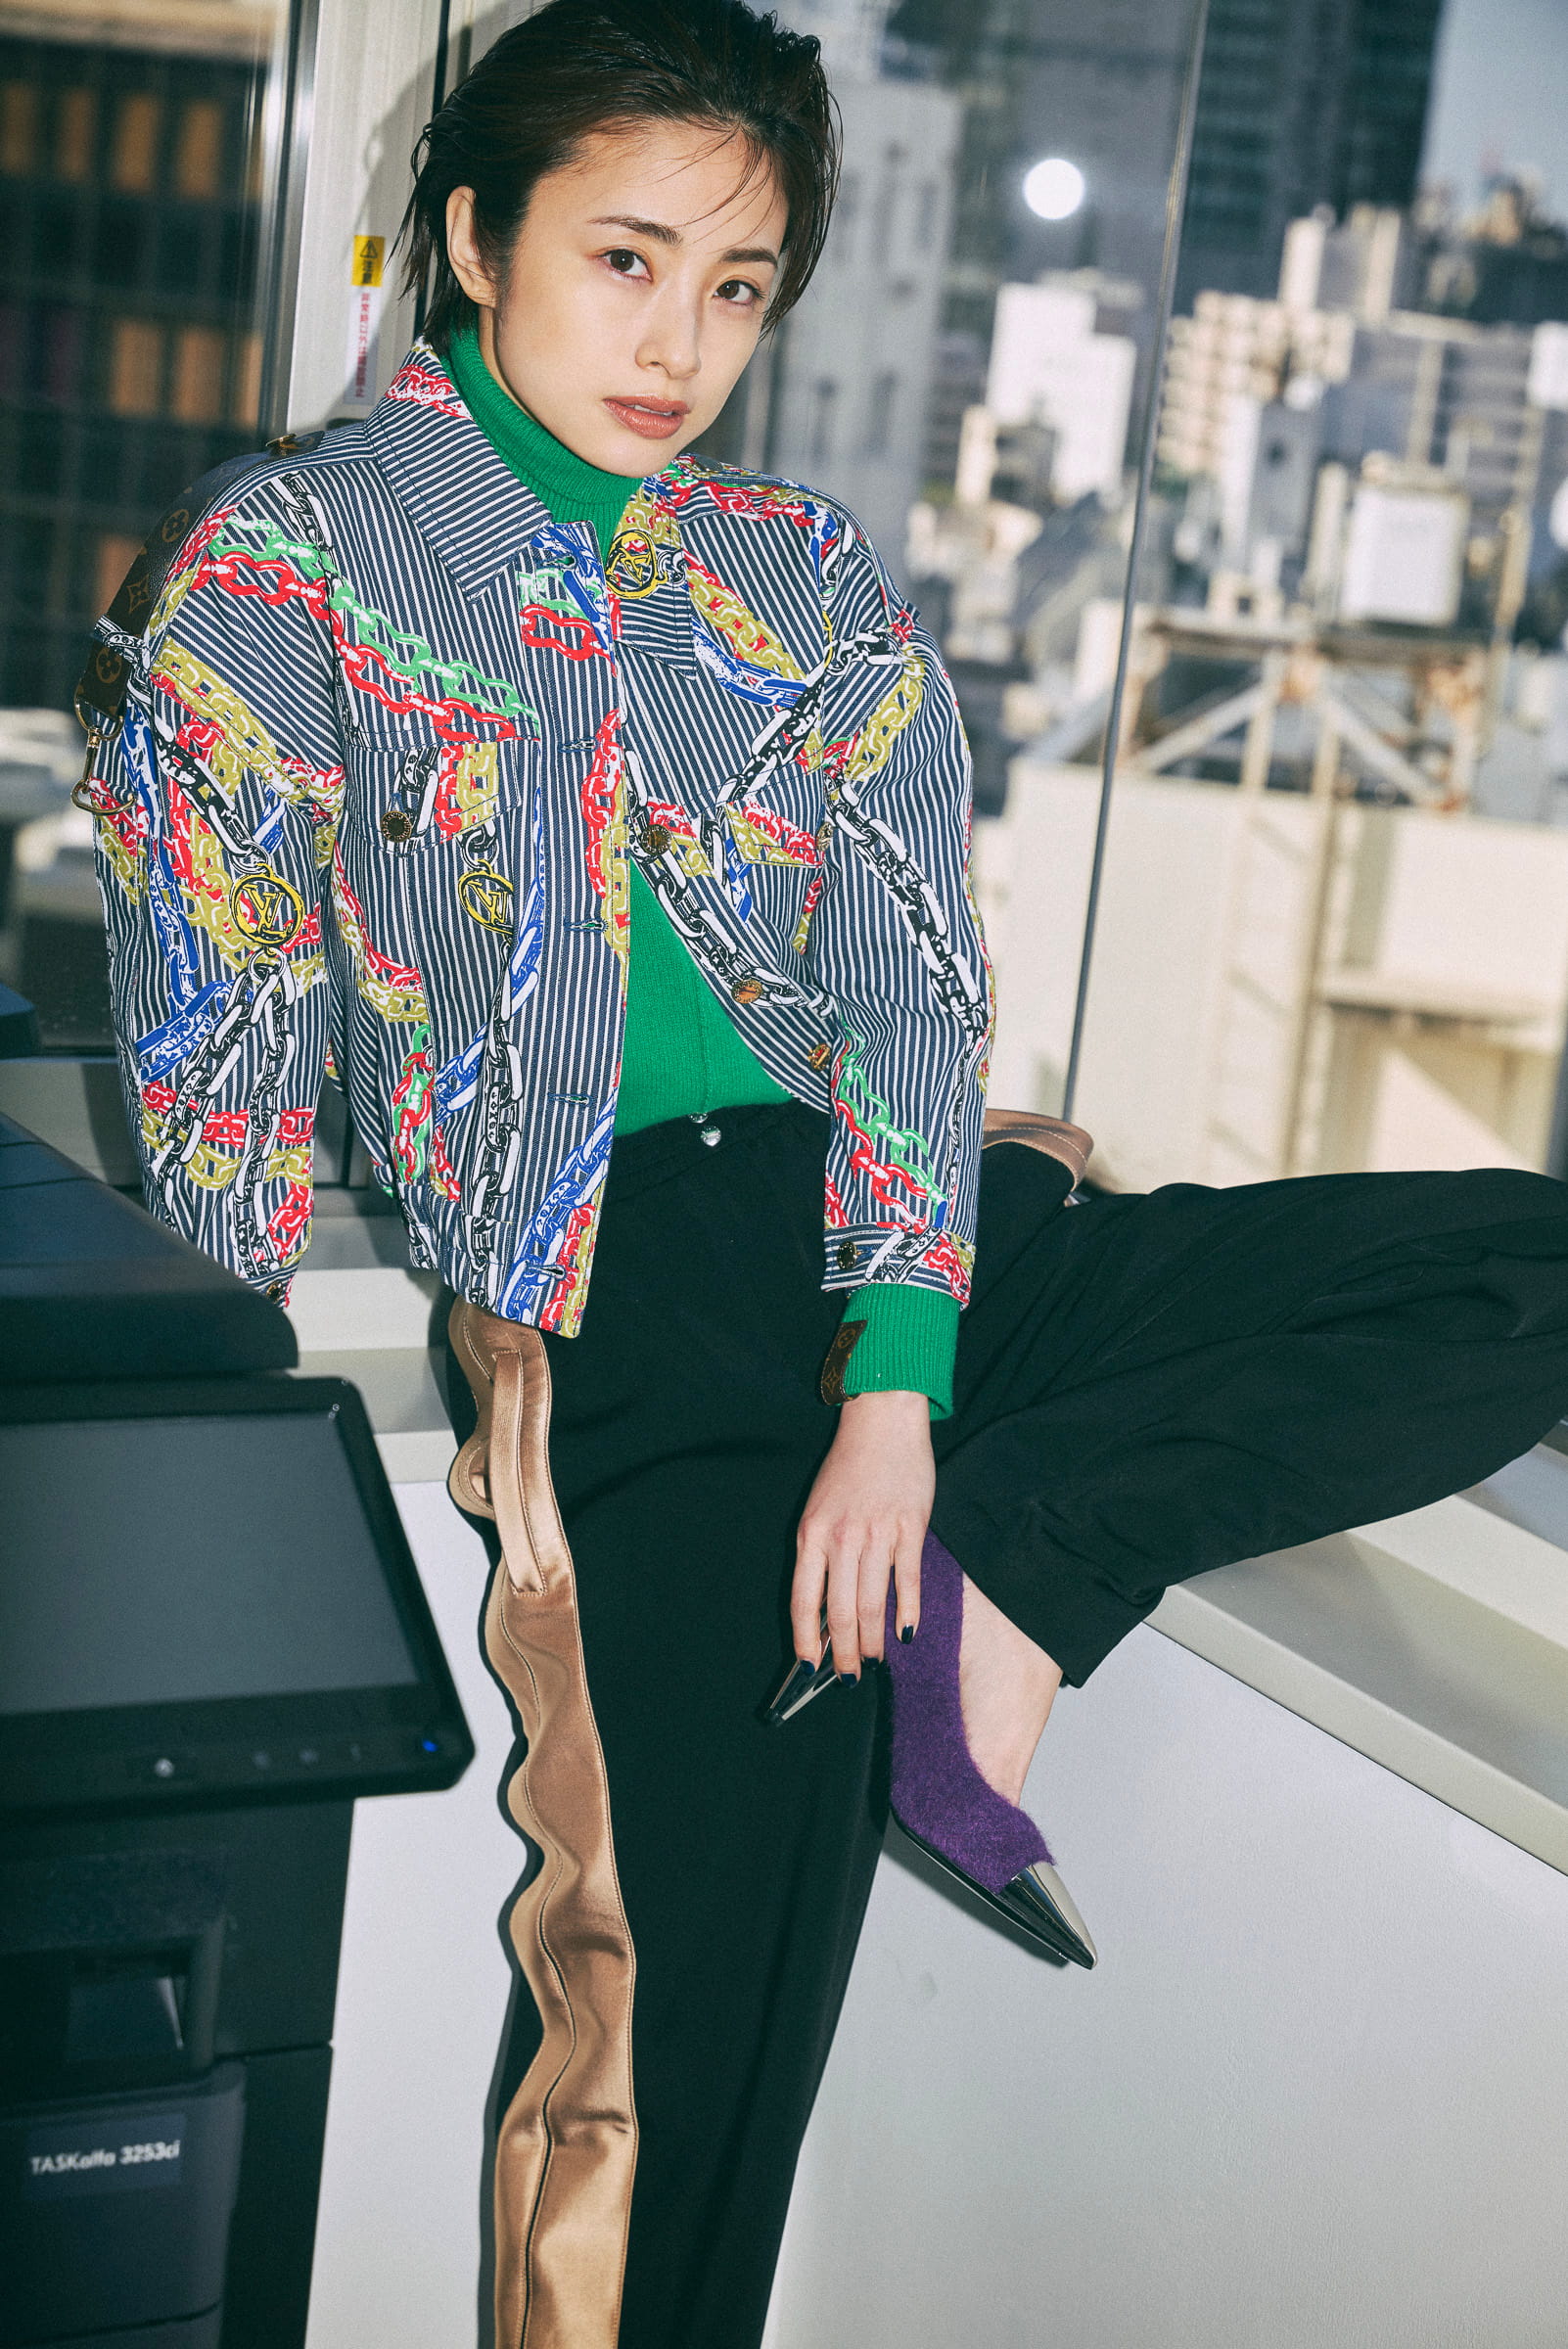 上戸彩の私服 ルイ ヴィトン Louis Vuitton の21年プレフォールコレクション ビタミンカラーをイメージしたシリーズです 芸能人の私服 衣装まとめ Woomy